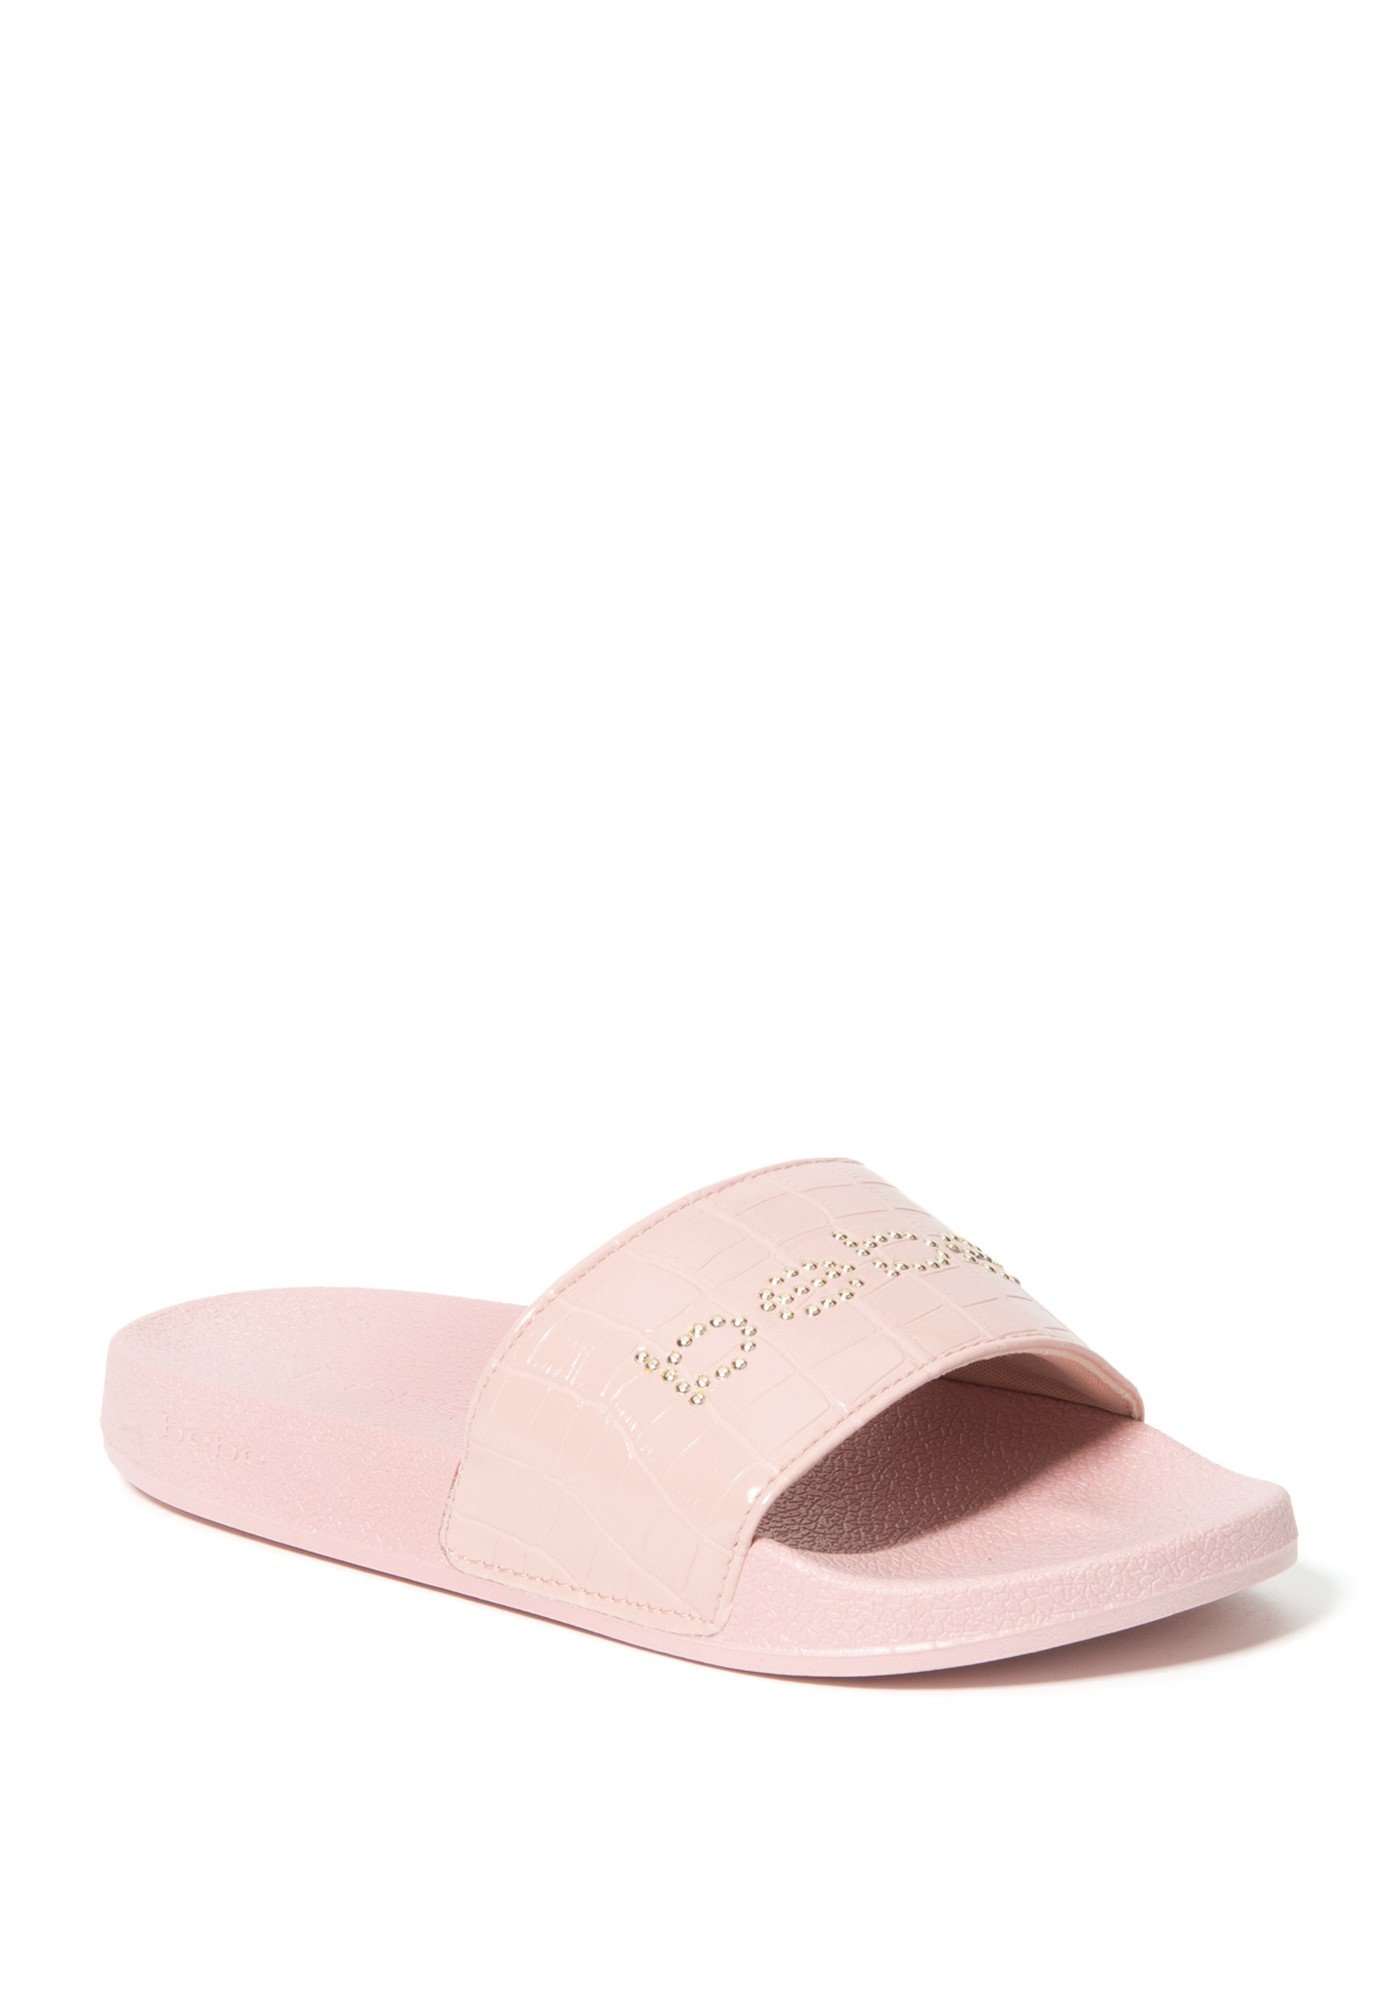 Bebe Women's Fynnley Logo Slides Shoe, Size 6 in Pink Synthetic